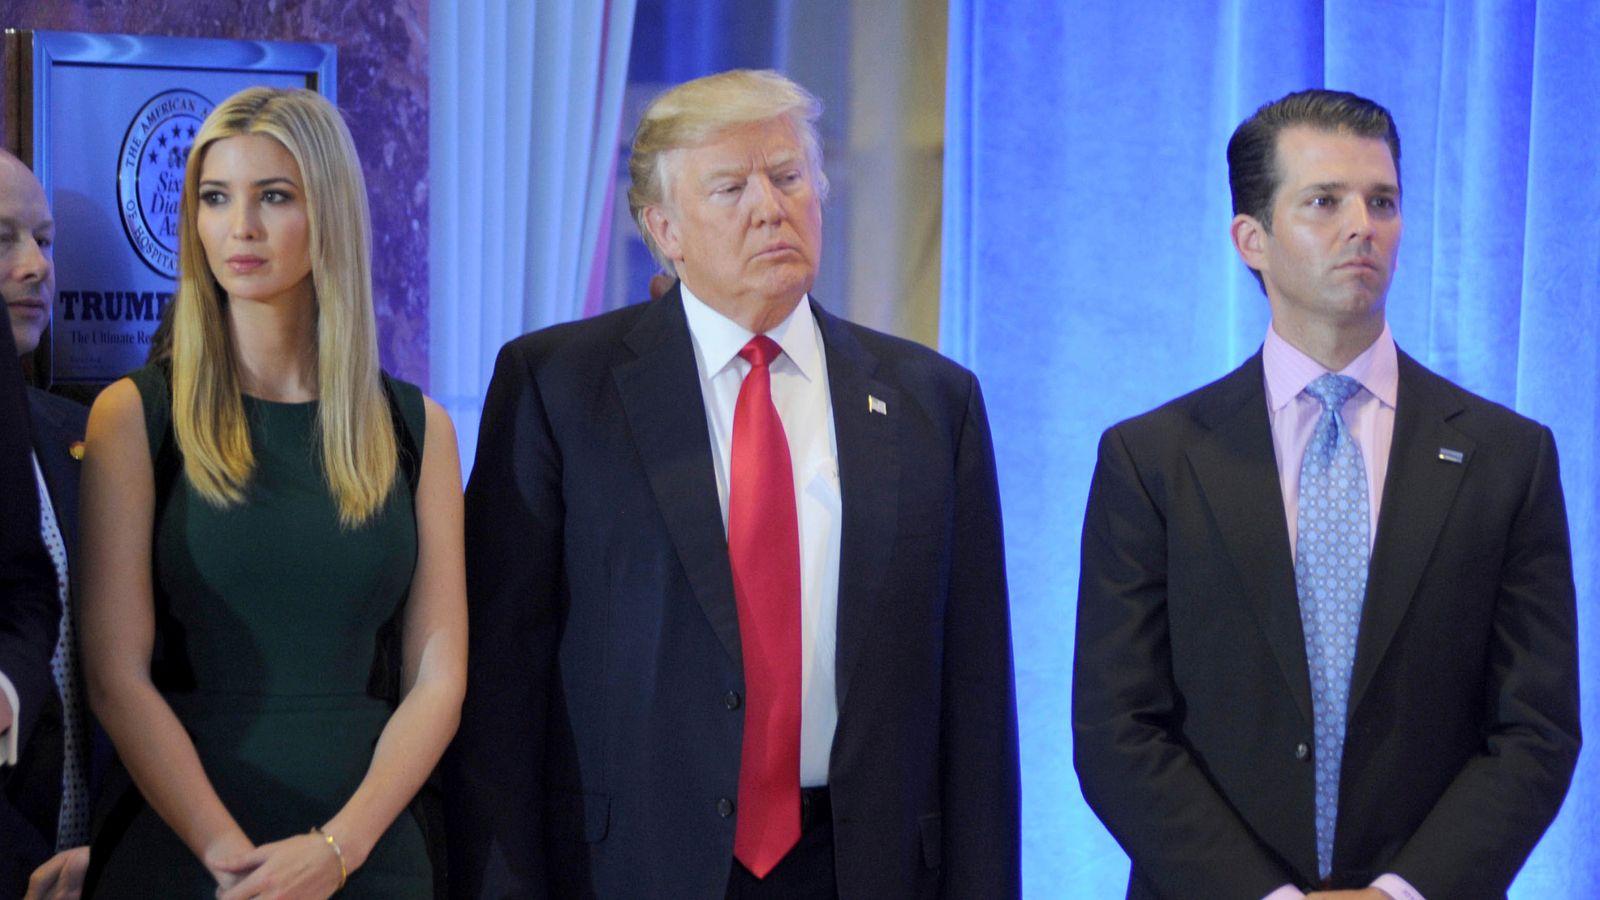 Donald Trump, Ivanka Trump und Donald Trump Jr.  stimmt zu, bei Ermittlungen zu den Geschäftspraktiken des ehemaligen Präsidenten auszusagen |  US-Nachrichten